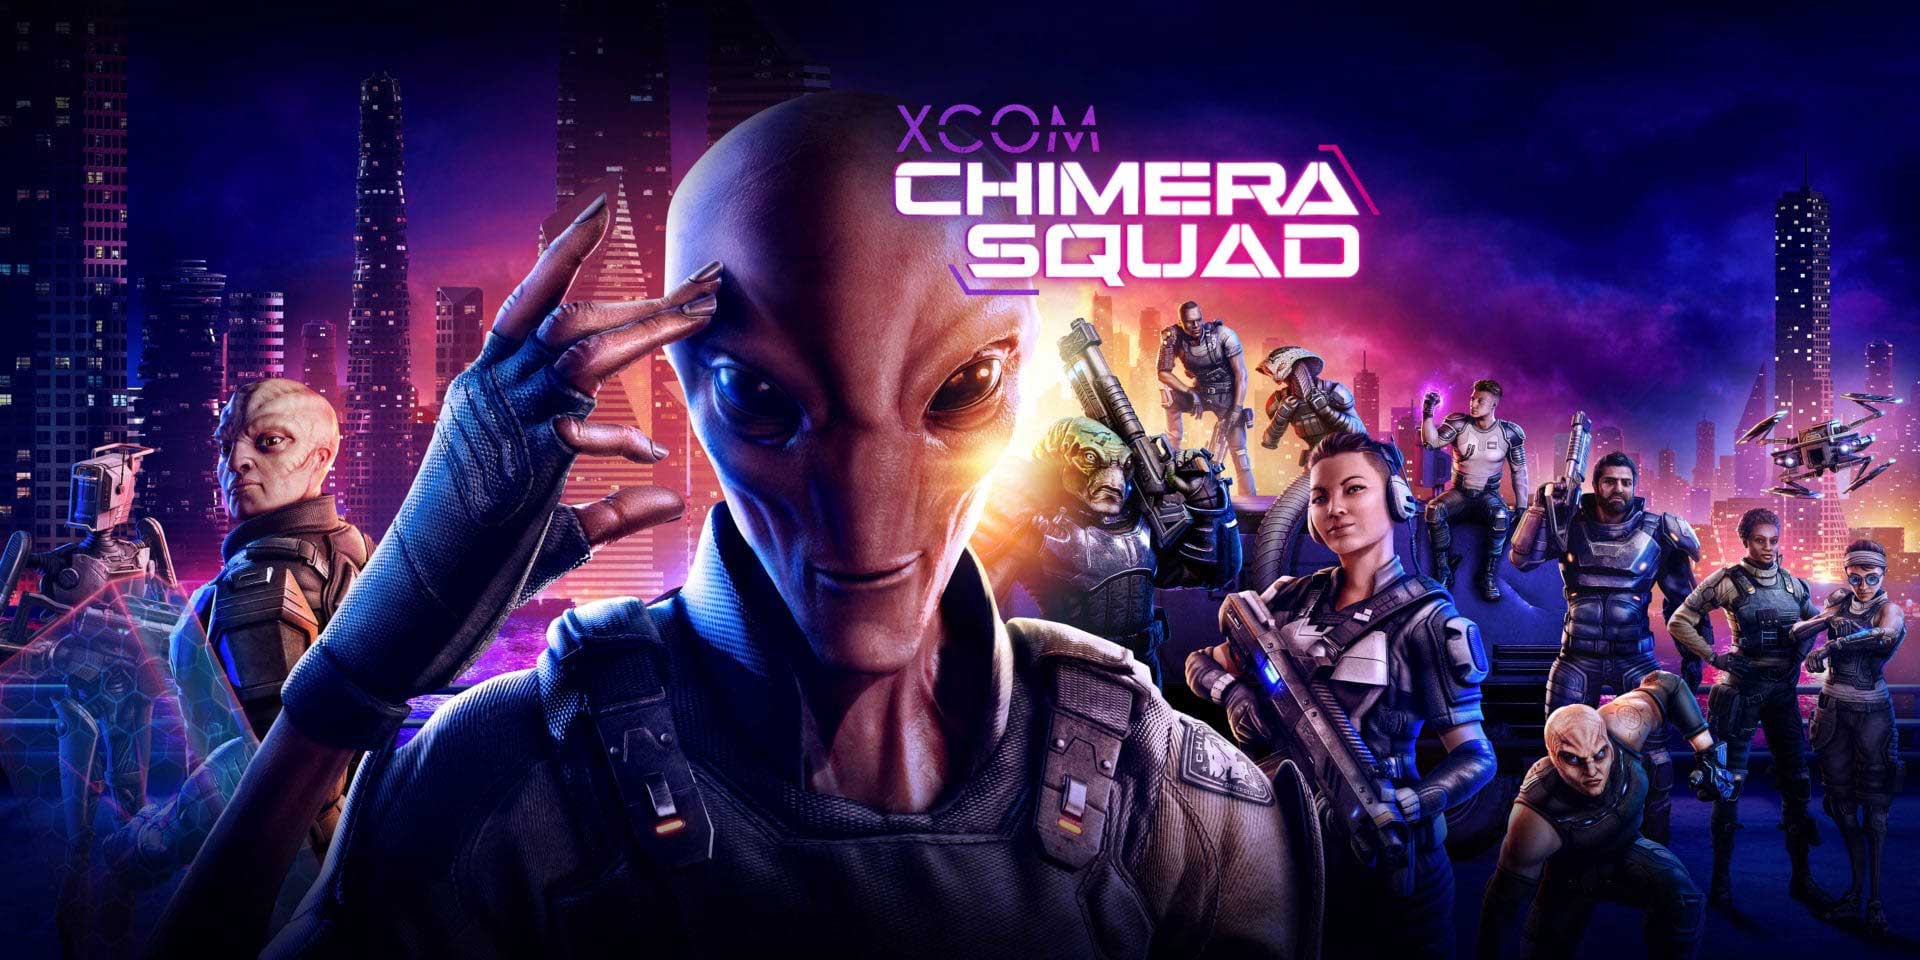 Анонсирована XCOM: Chimera Squad — спин-офф XCOM 2 про кооператив людей и пришельцев (фото)